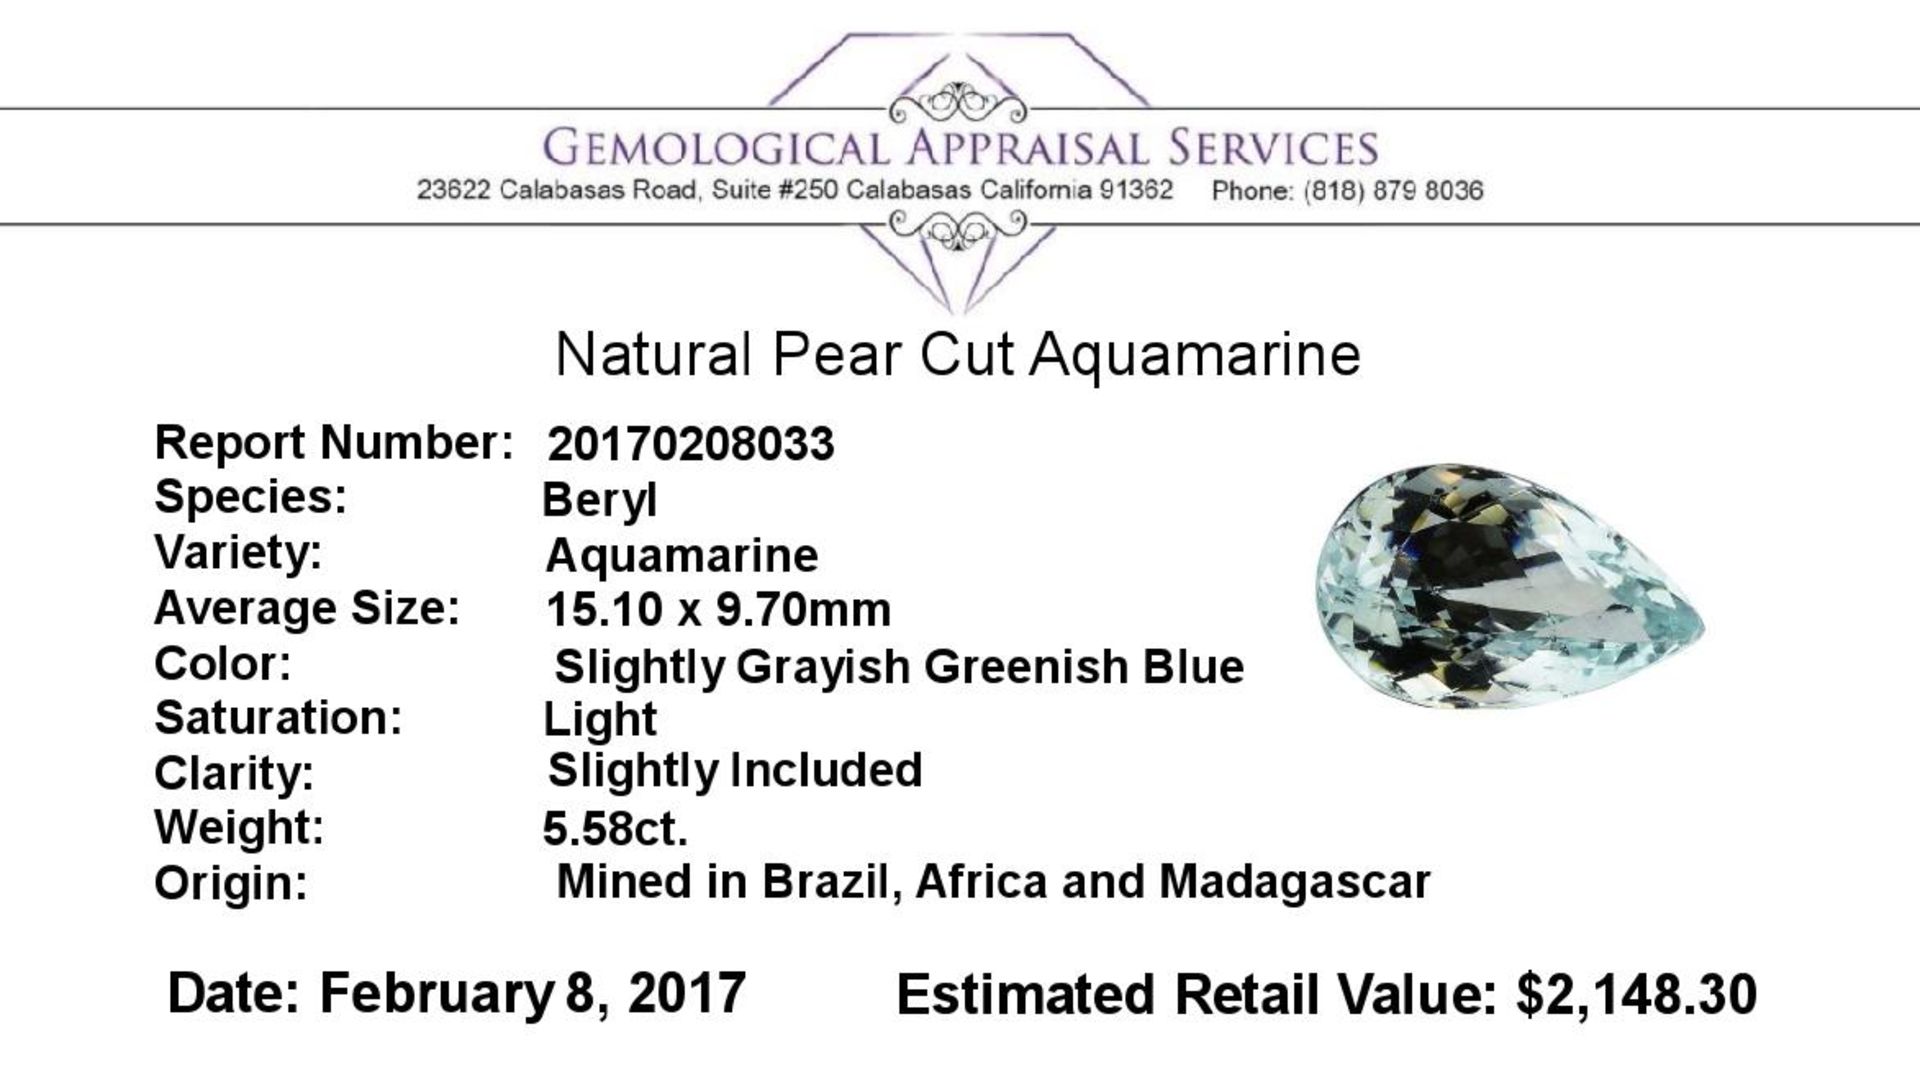 5.58 ct.Natural Pear Cut Aquamarine - Image 2 of 2